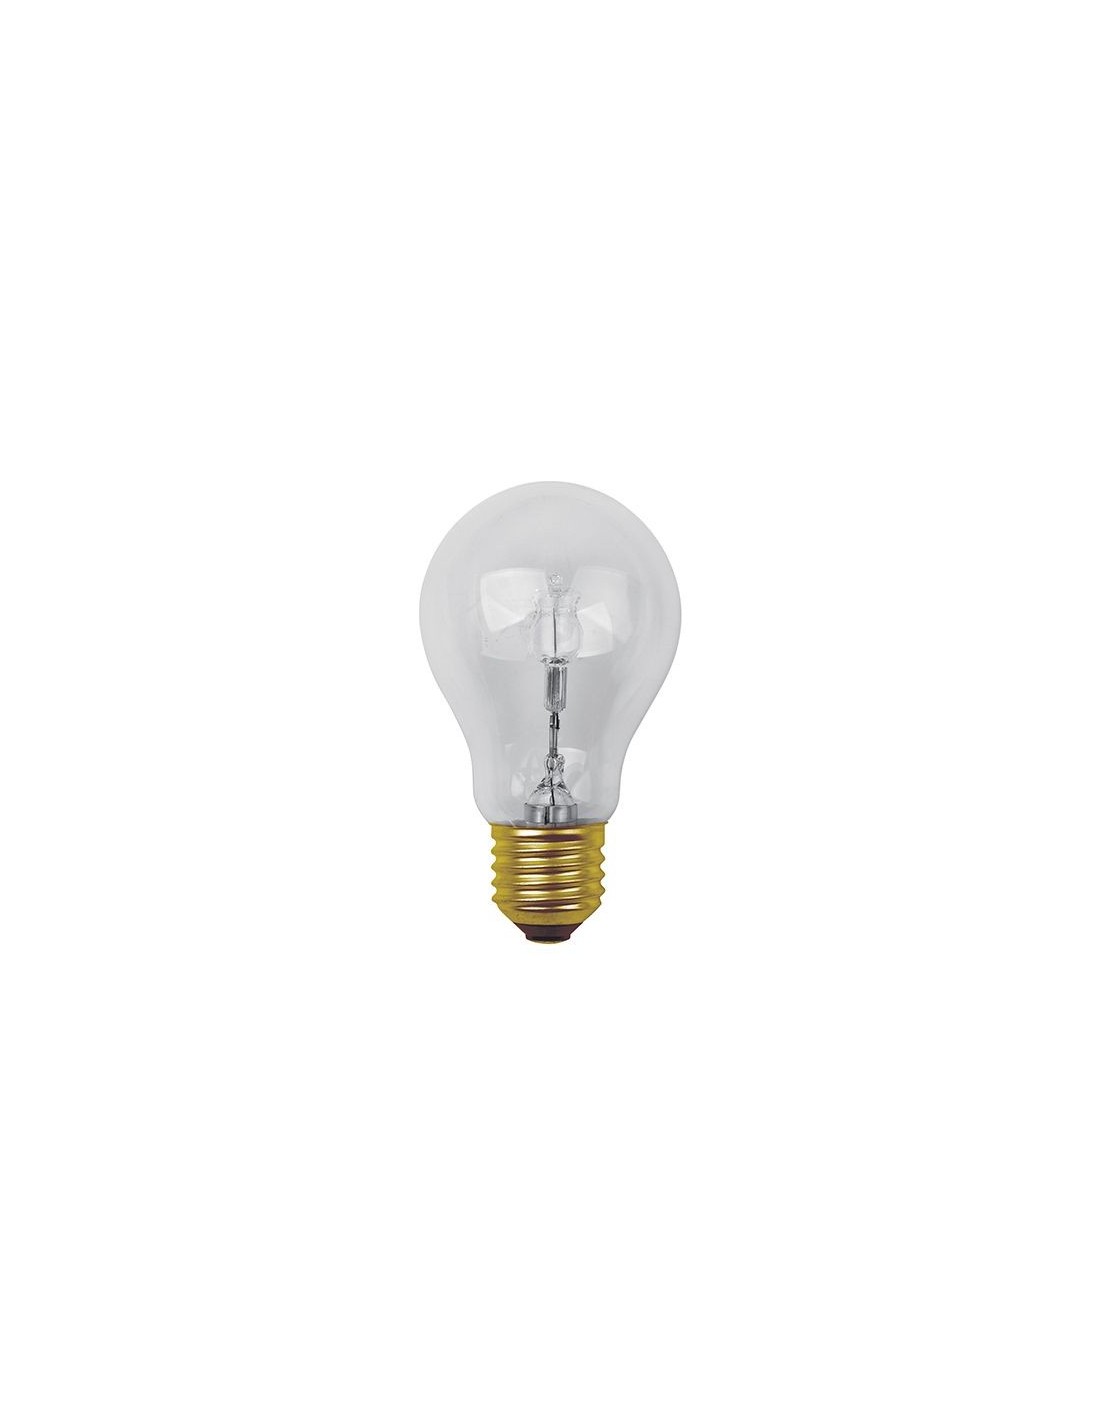 Ampoule Halogène 100 W (E27) Design